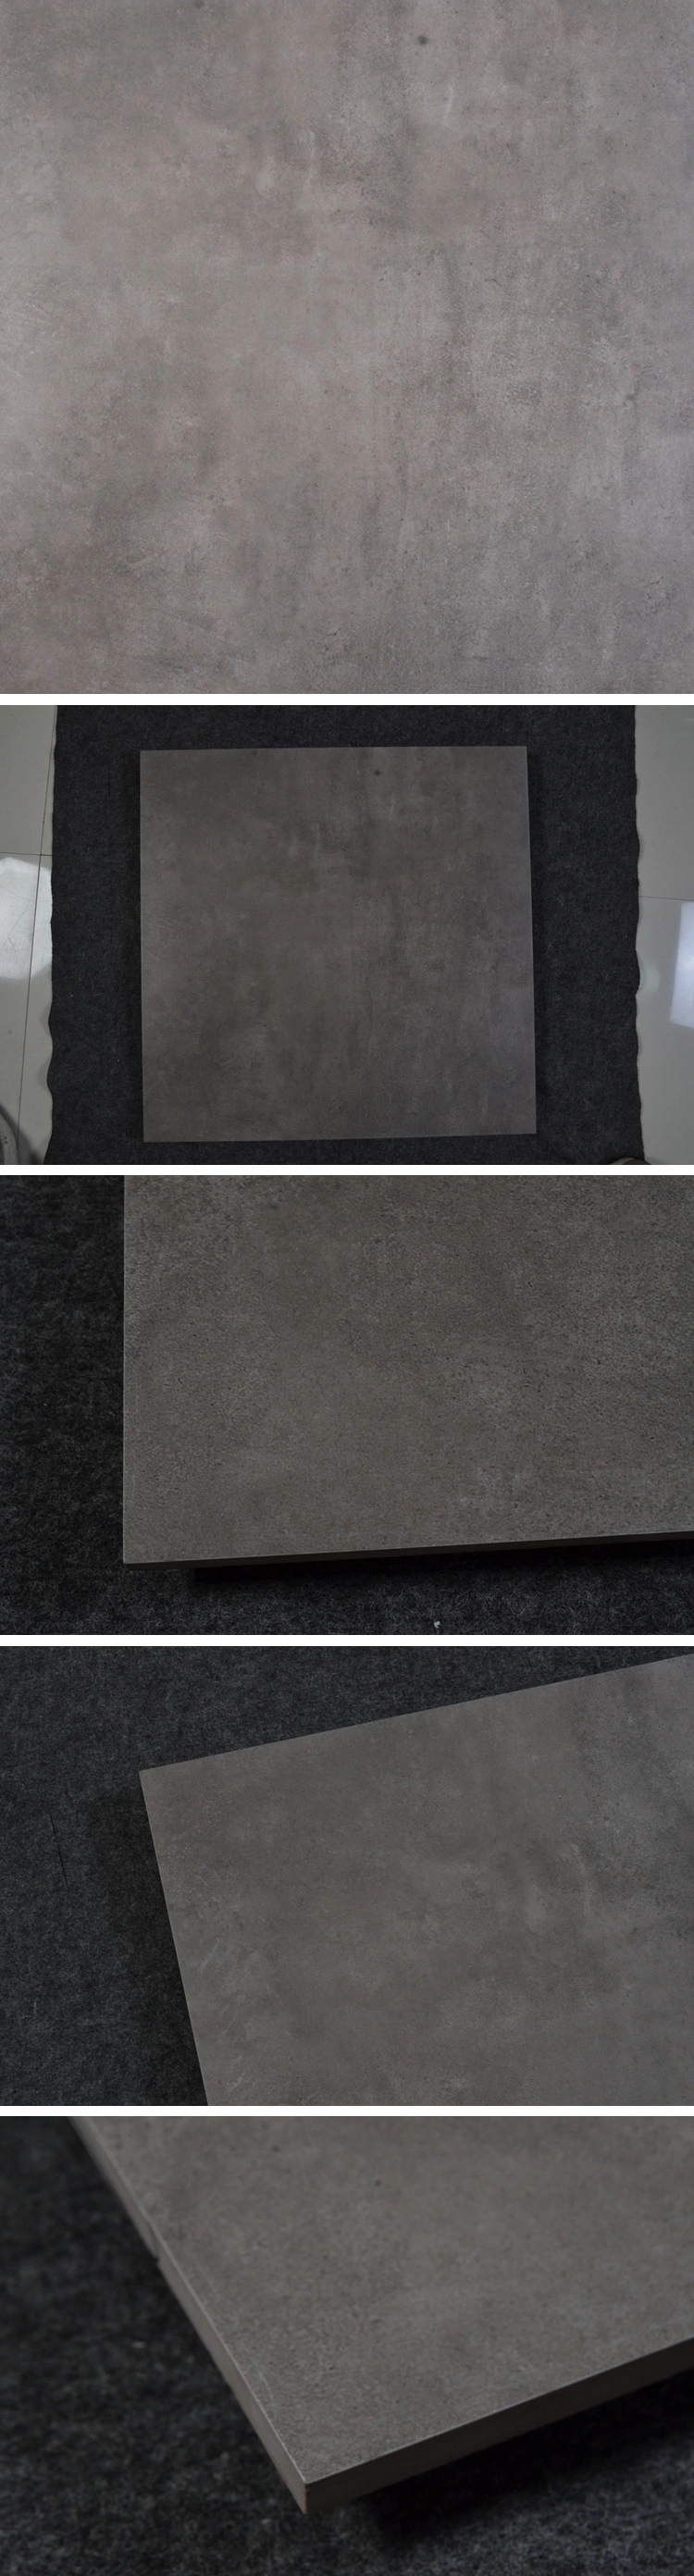 Impervious for Shower Innovative Stone Gray Porcelain Bathroom Floor Tile